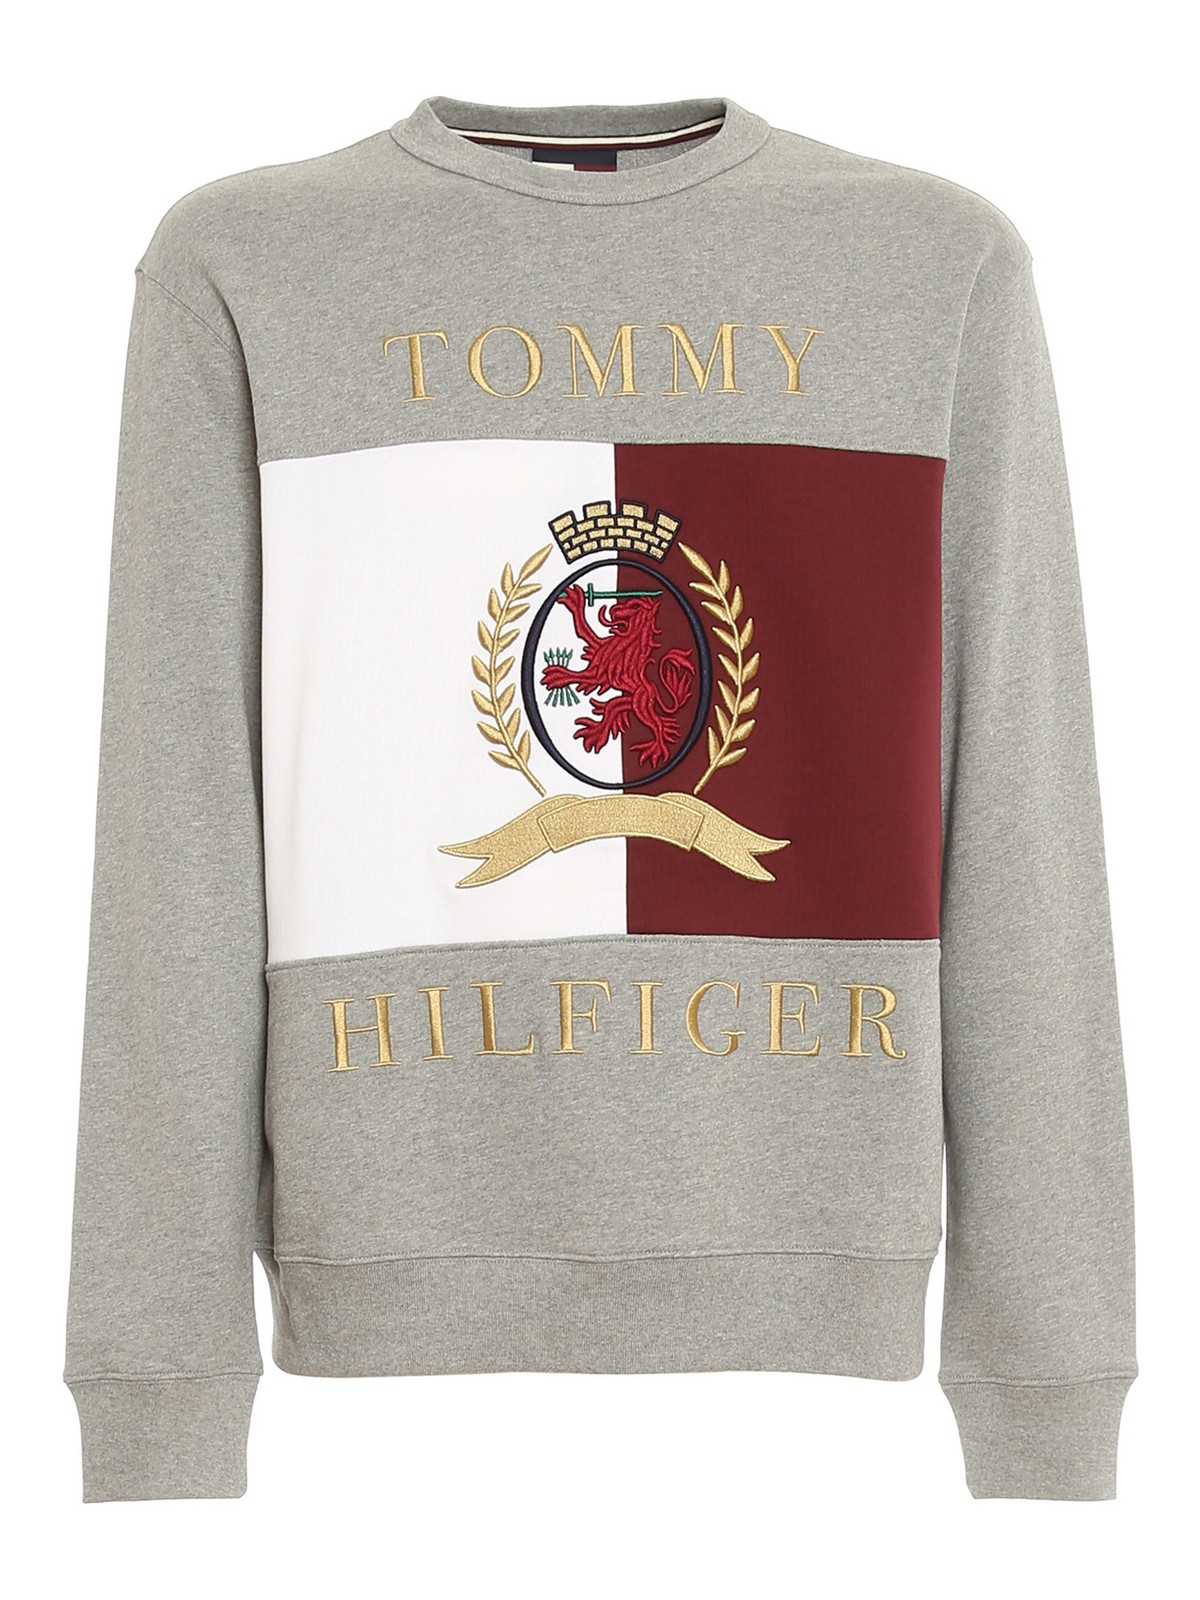 Afwijzen Simuleren japon Sweatshirts & Sweaters Tommy Hilfiger - Crest logo sweatshirt -  MW0MW18505VBH